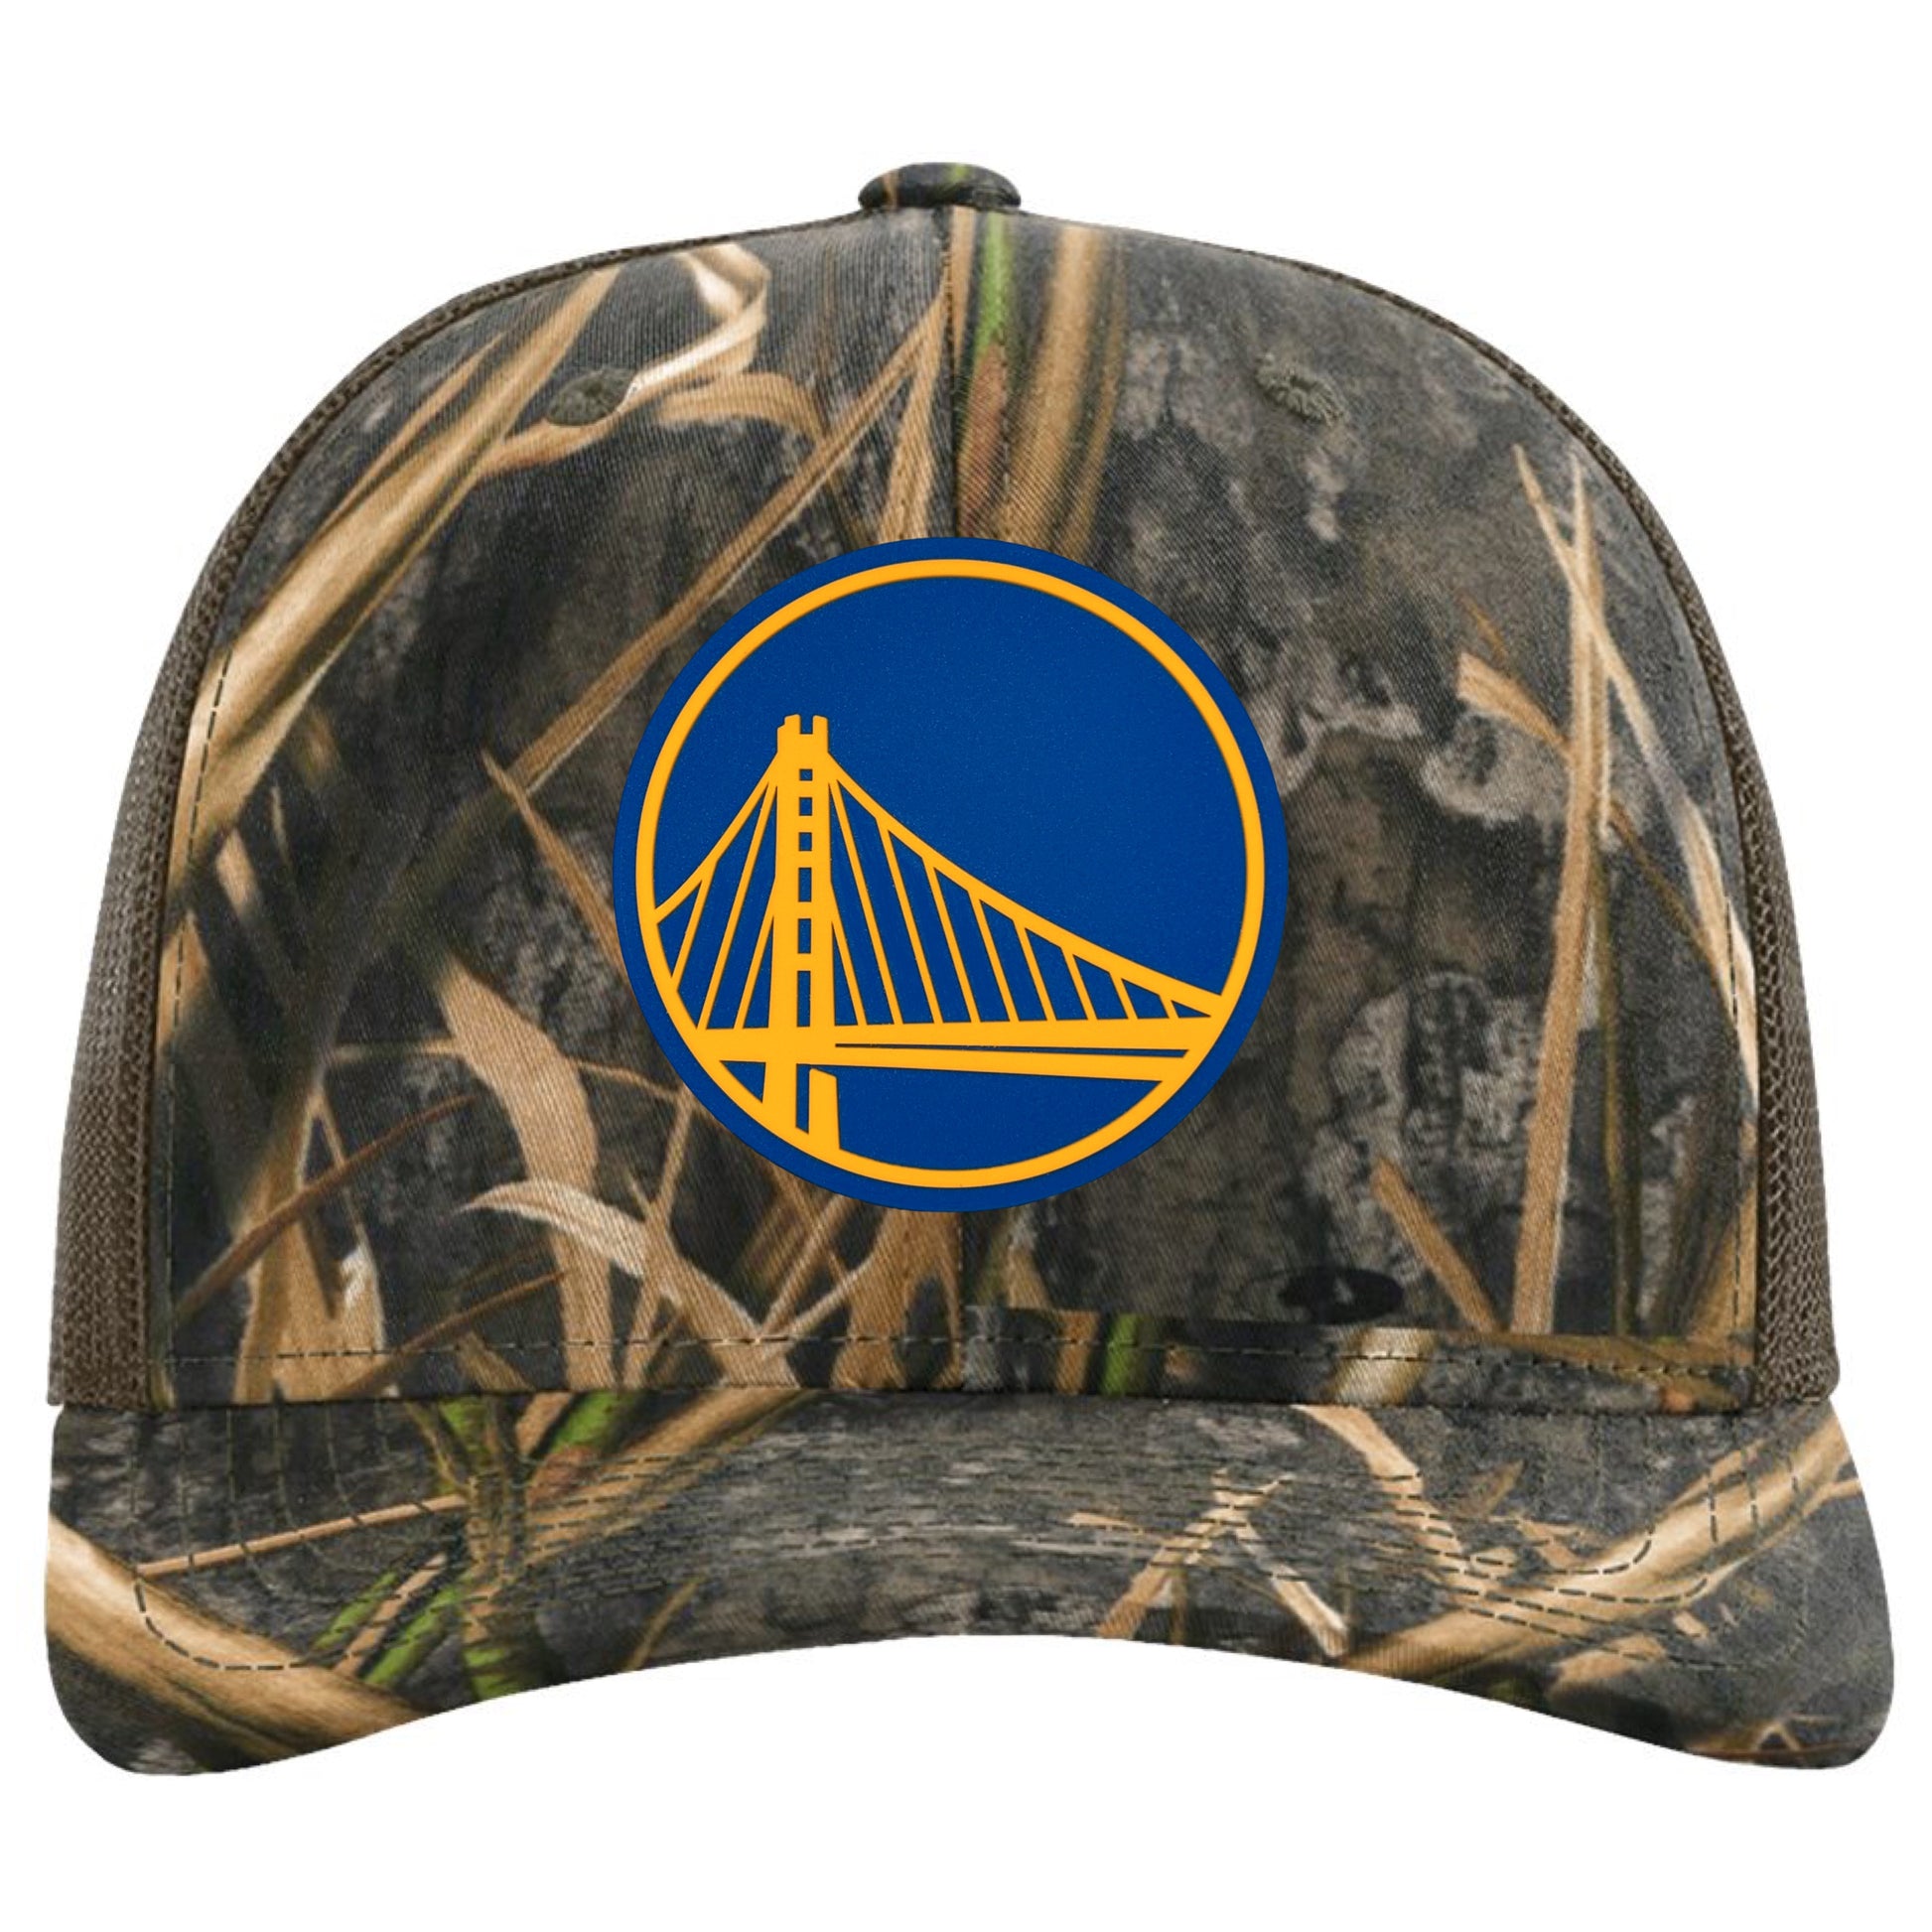 Golden State Warriors 3D Patterned Snapback Trucker Hat- Mossy Oak Habitat/ Brown - Ten Gallon Hat Co.